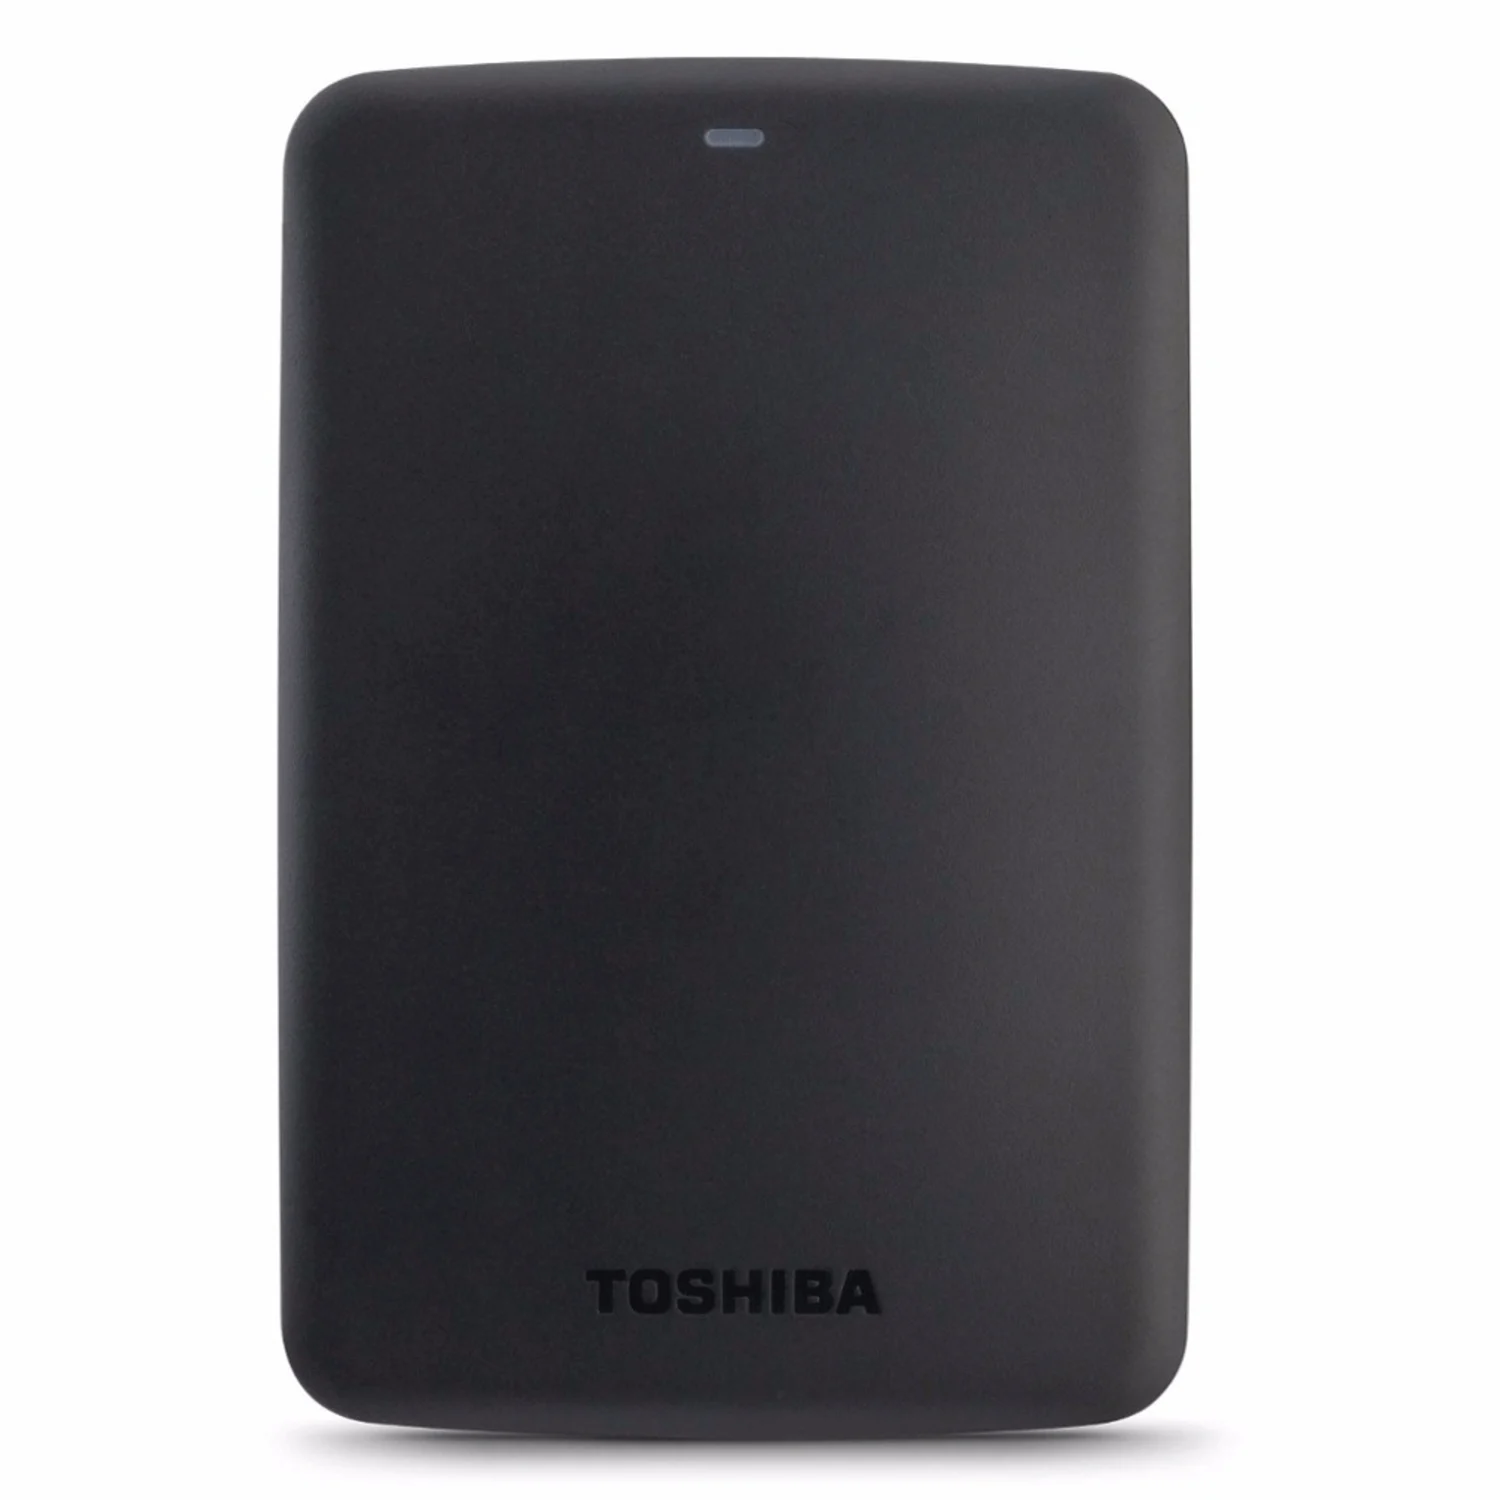 HD Externo Toshiba Canvio Basics USB 3.0 - Preto (HDTB410XK3AA)